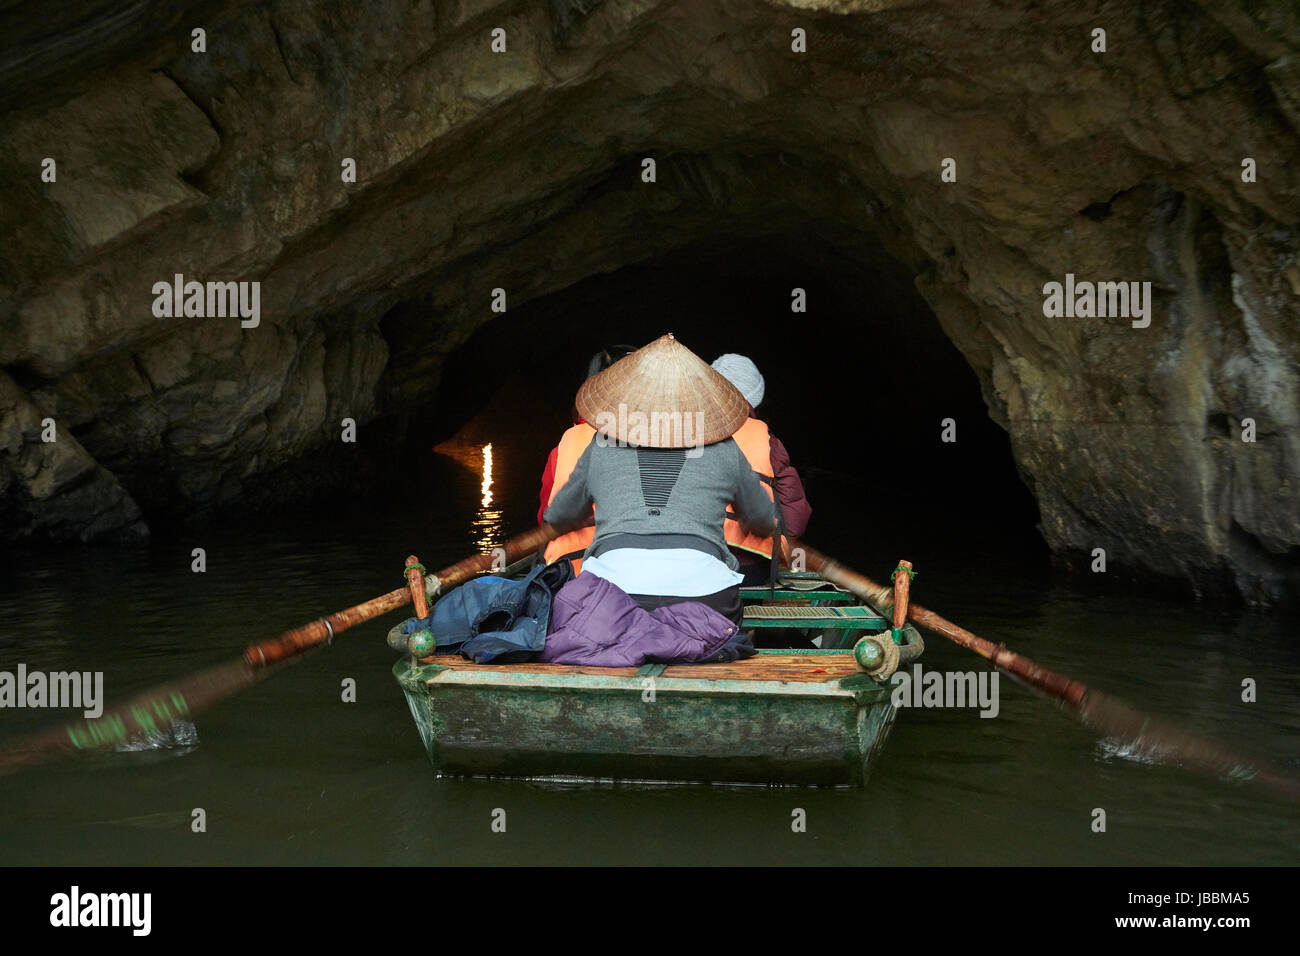 Les touristes en voyage en bateau à travers les grottes de Trang An (UNESCO World Heritage), près de Ninh Binh, Vietnam Banque D'Images